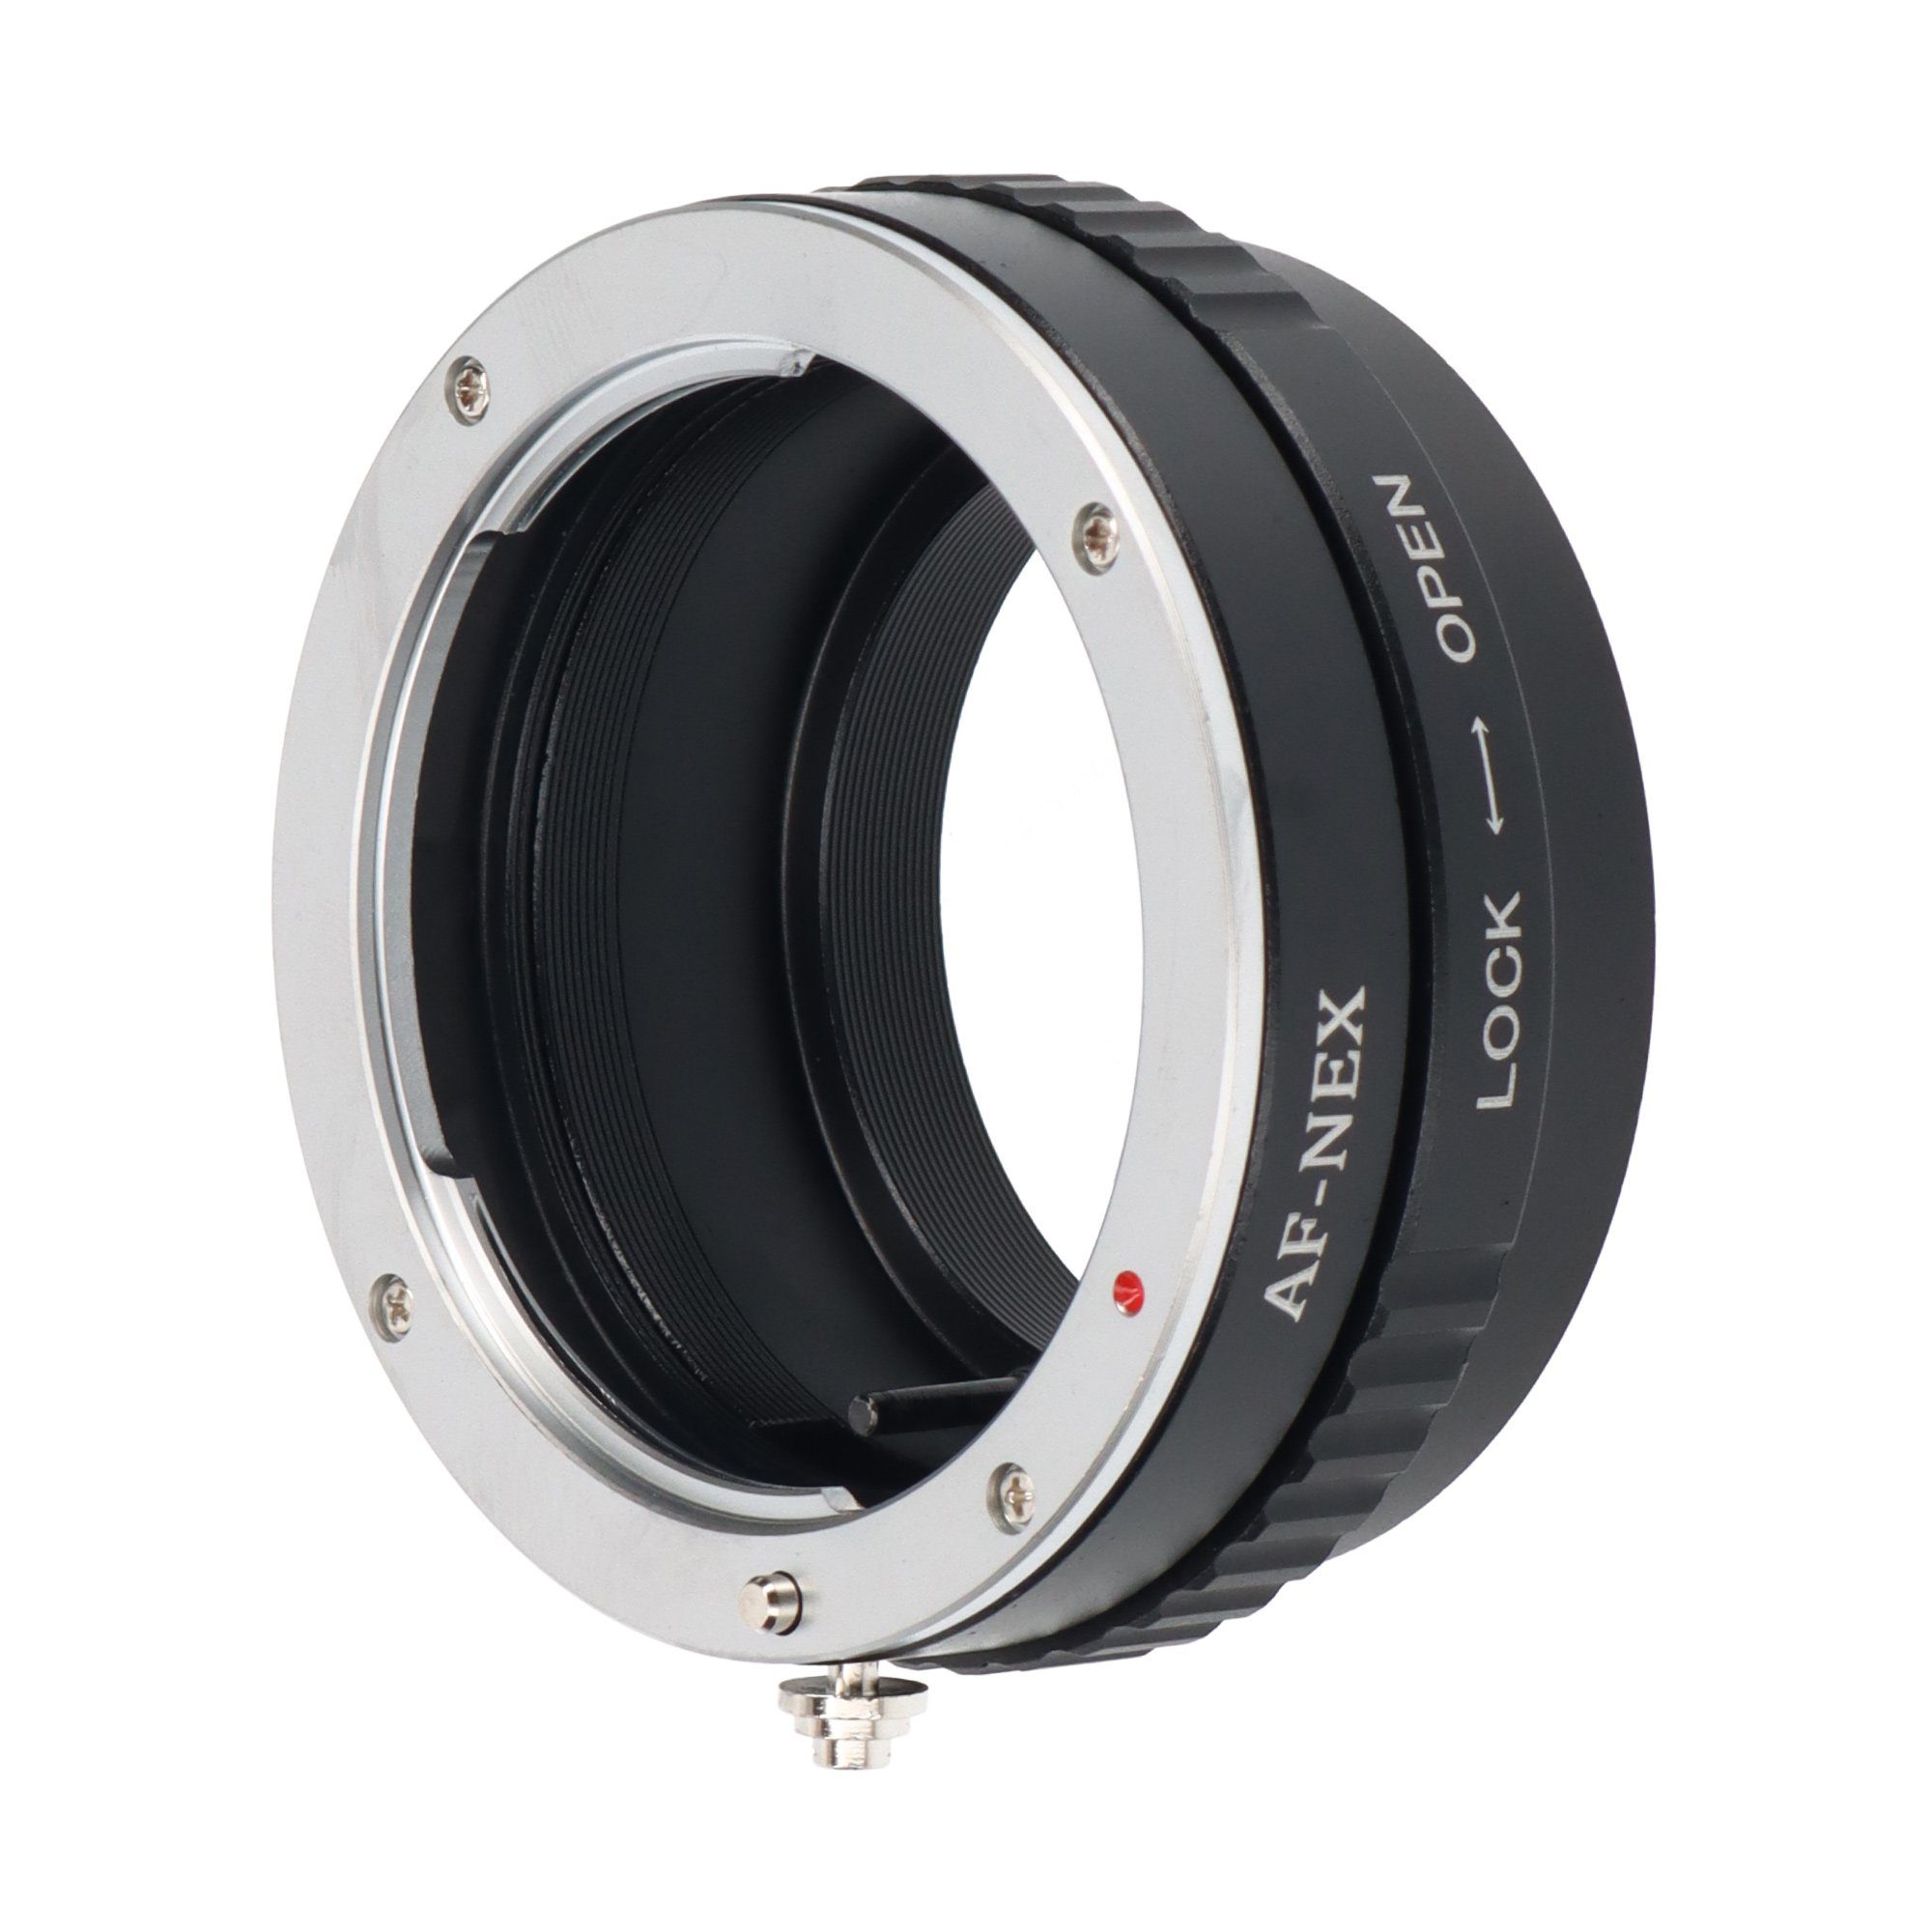 ayex Objektivadapter Sony/Minolta Objektive an Sony E-Mount Kameras Objektiveadapter